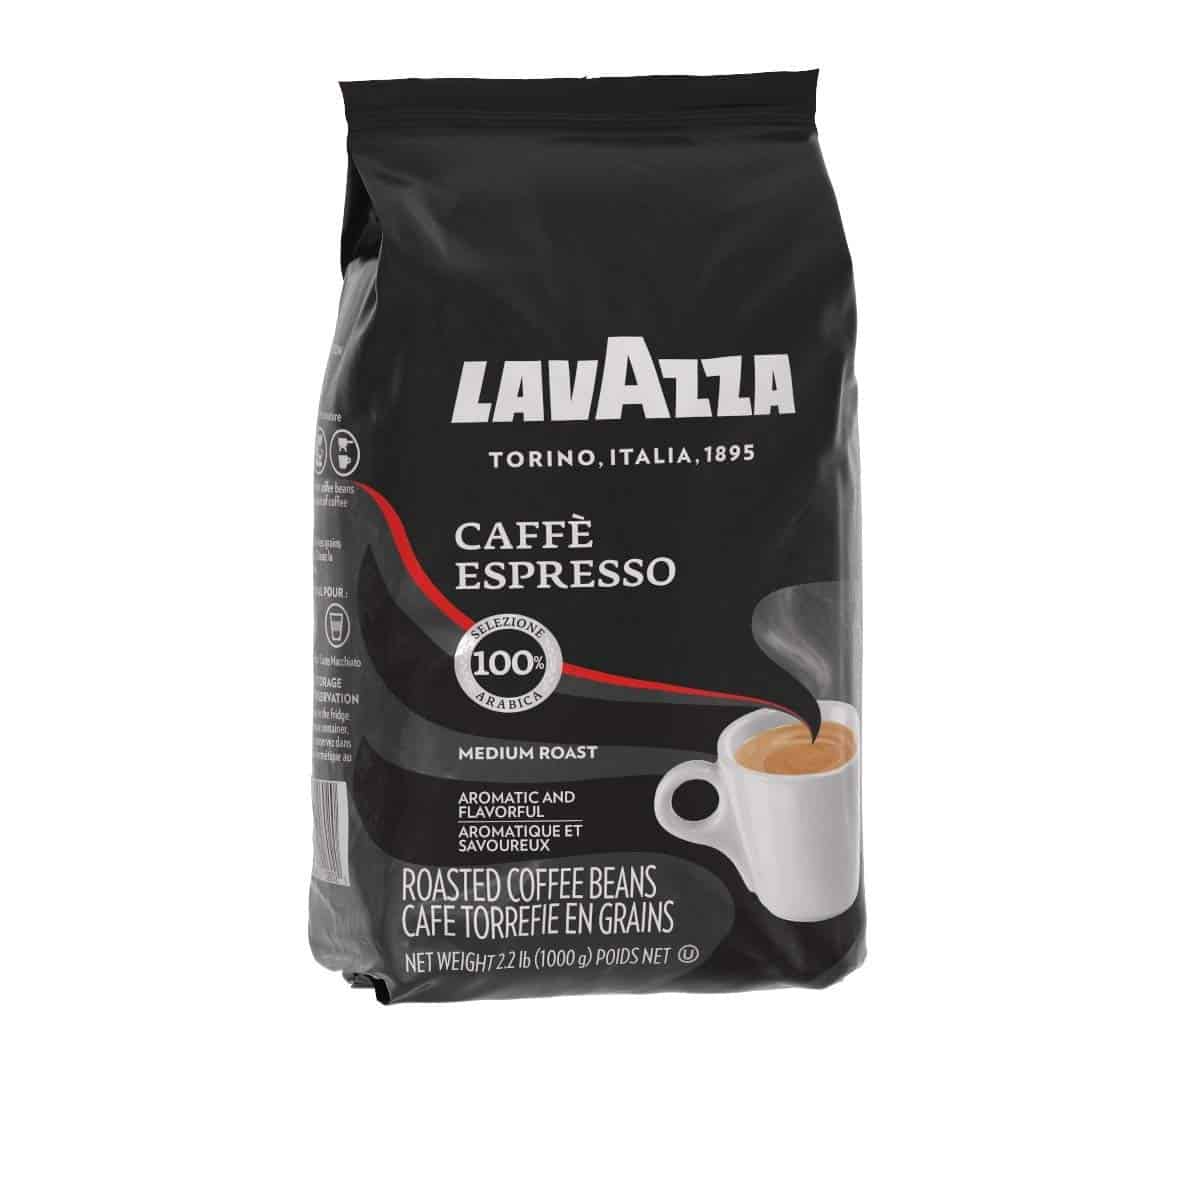 Lavazza Caffe Espresso Bean Coffee Blend -